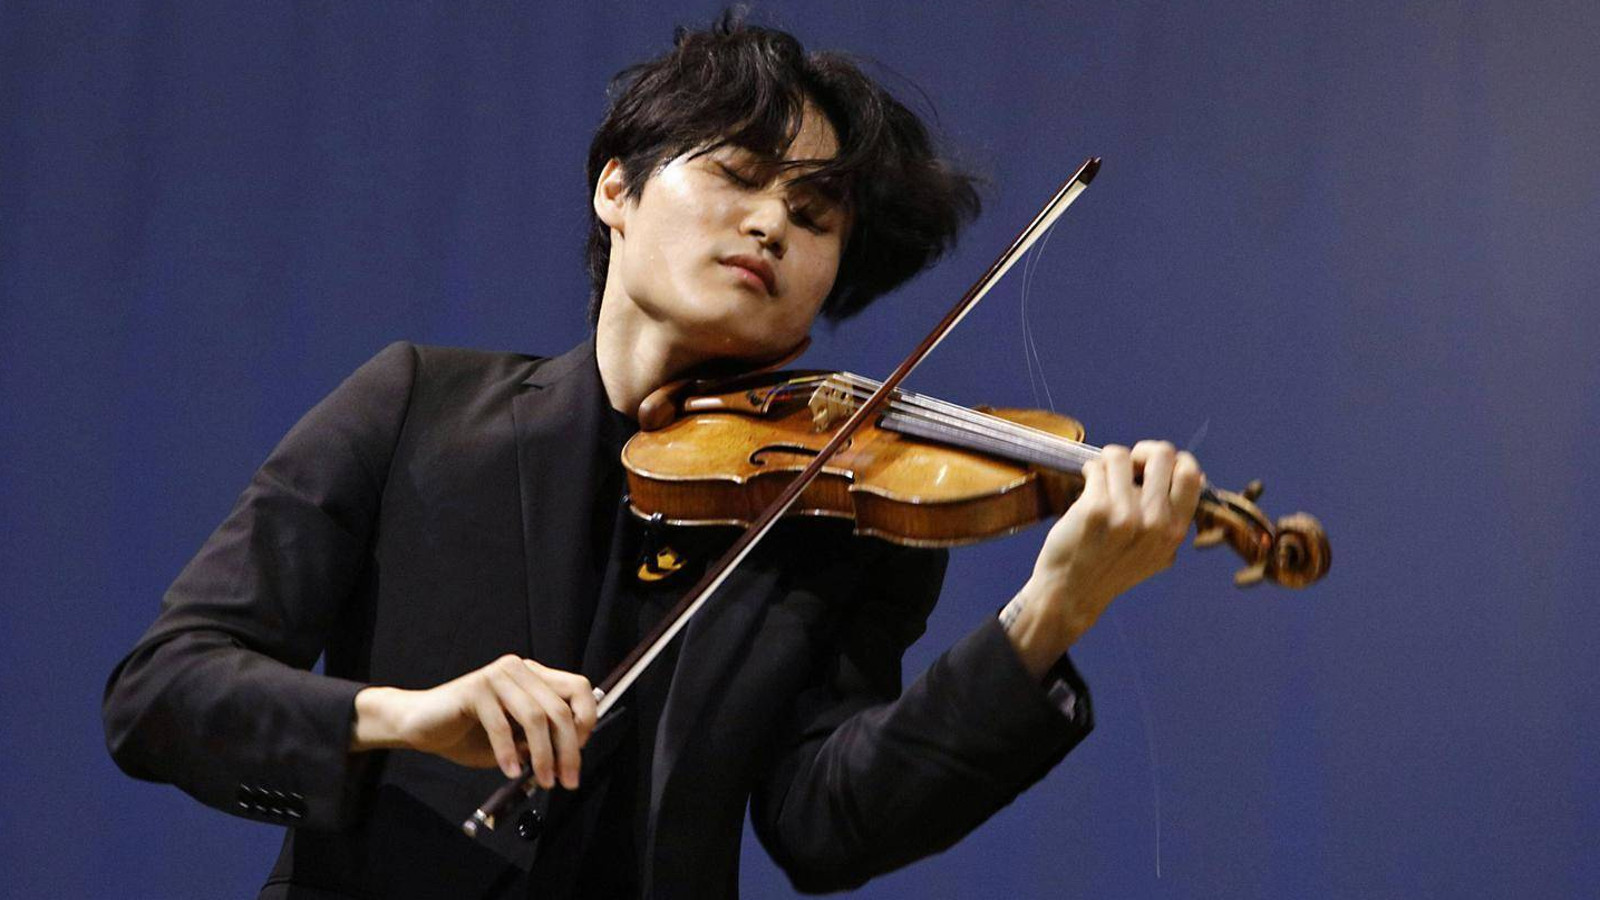 Kuvassa on Inmo Yang soittamassa viulua ja kuva on puolivartalokuva alaviistosta.